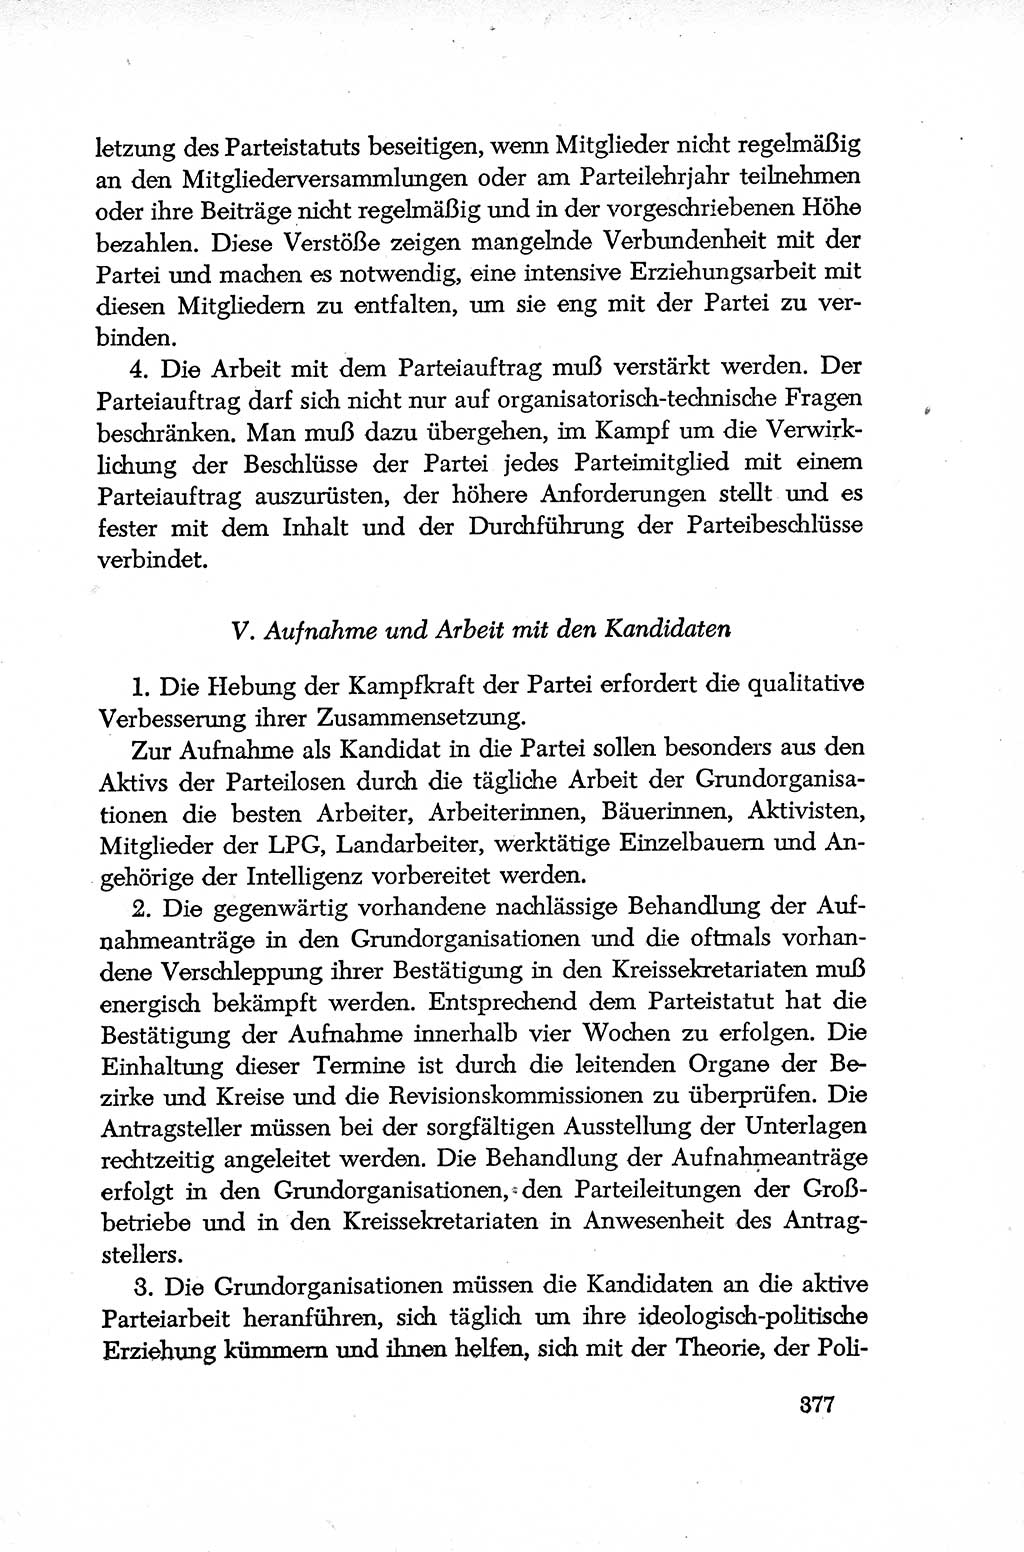 Dokumente der Sozialistischen Einheitspartei Deutschlands (SED) [Deutsche Demokratische Republik (DDR)] 1952-1953, Seite 377 (Dok. SED DDR 1952-1953, S. 377)